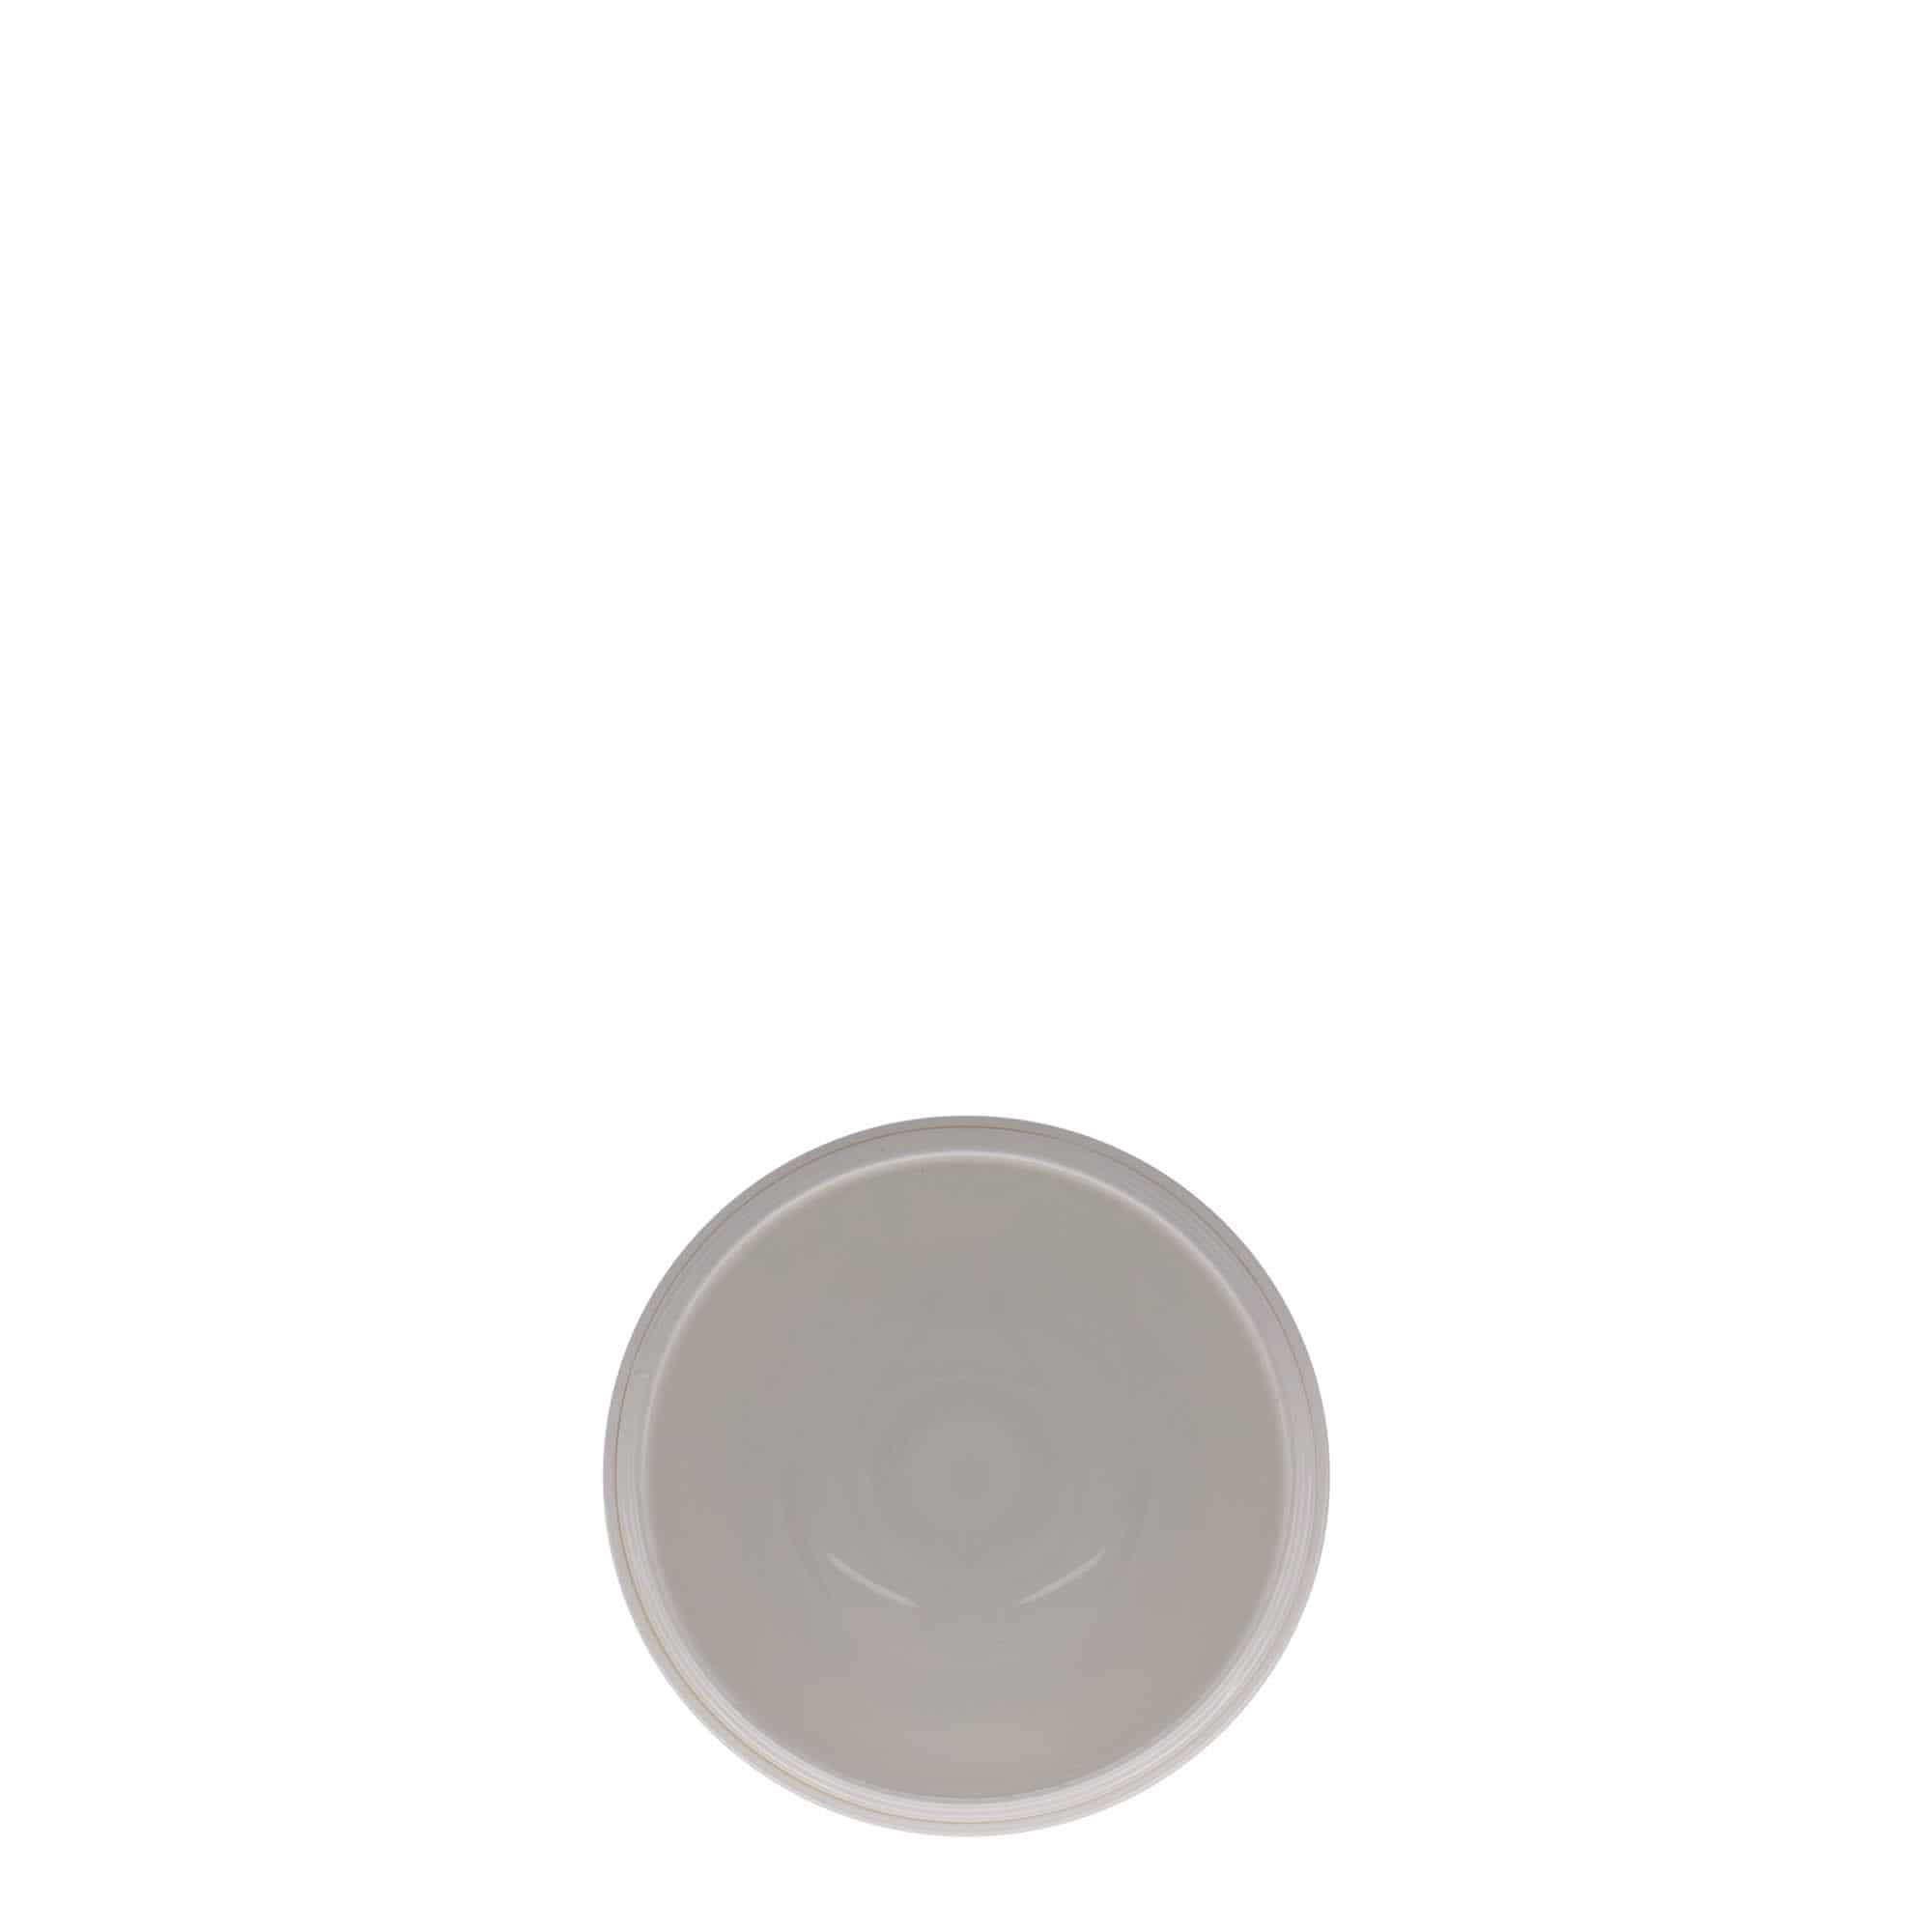 150 ml słoiczek z tworzywa sztucznego 'Bianca', PP, kolor biały, zamknięcie: zakrętka